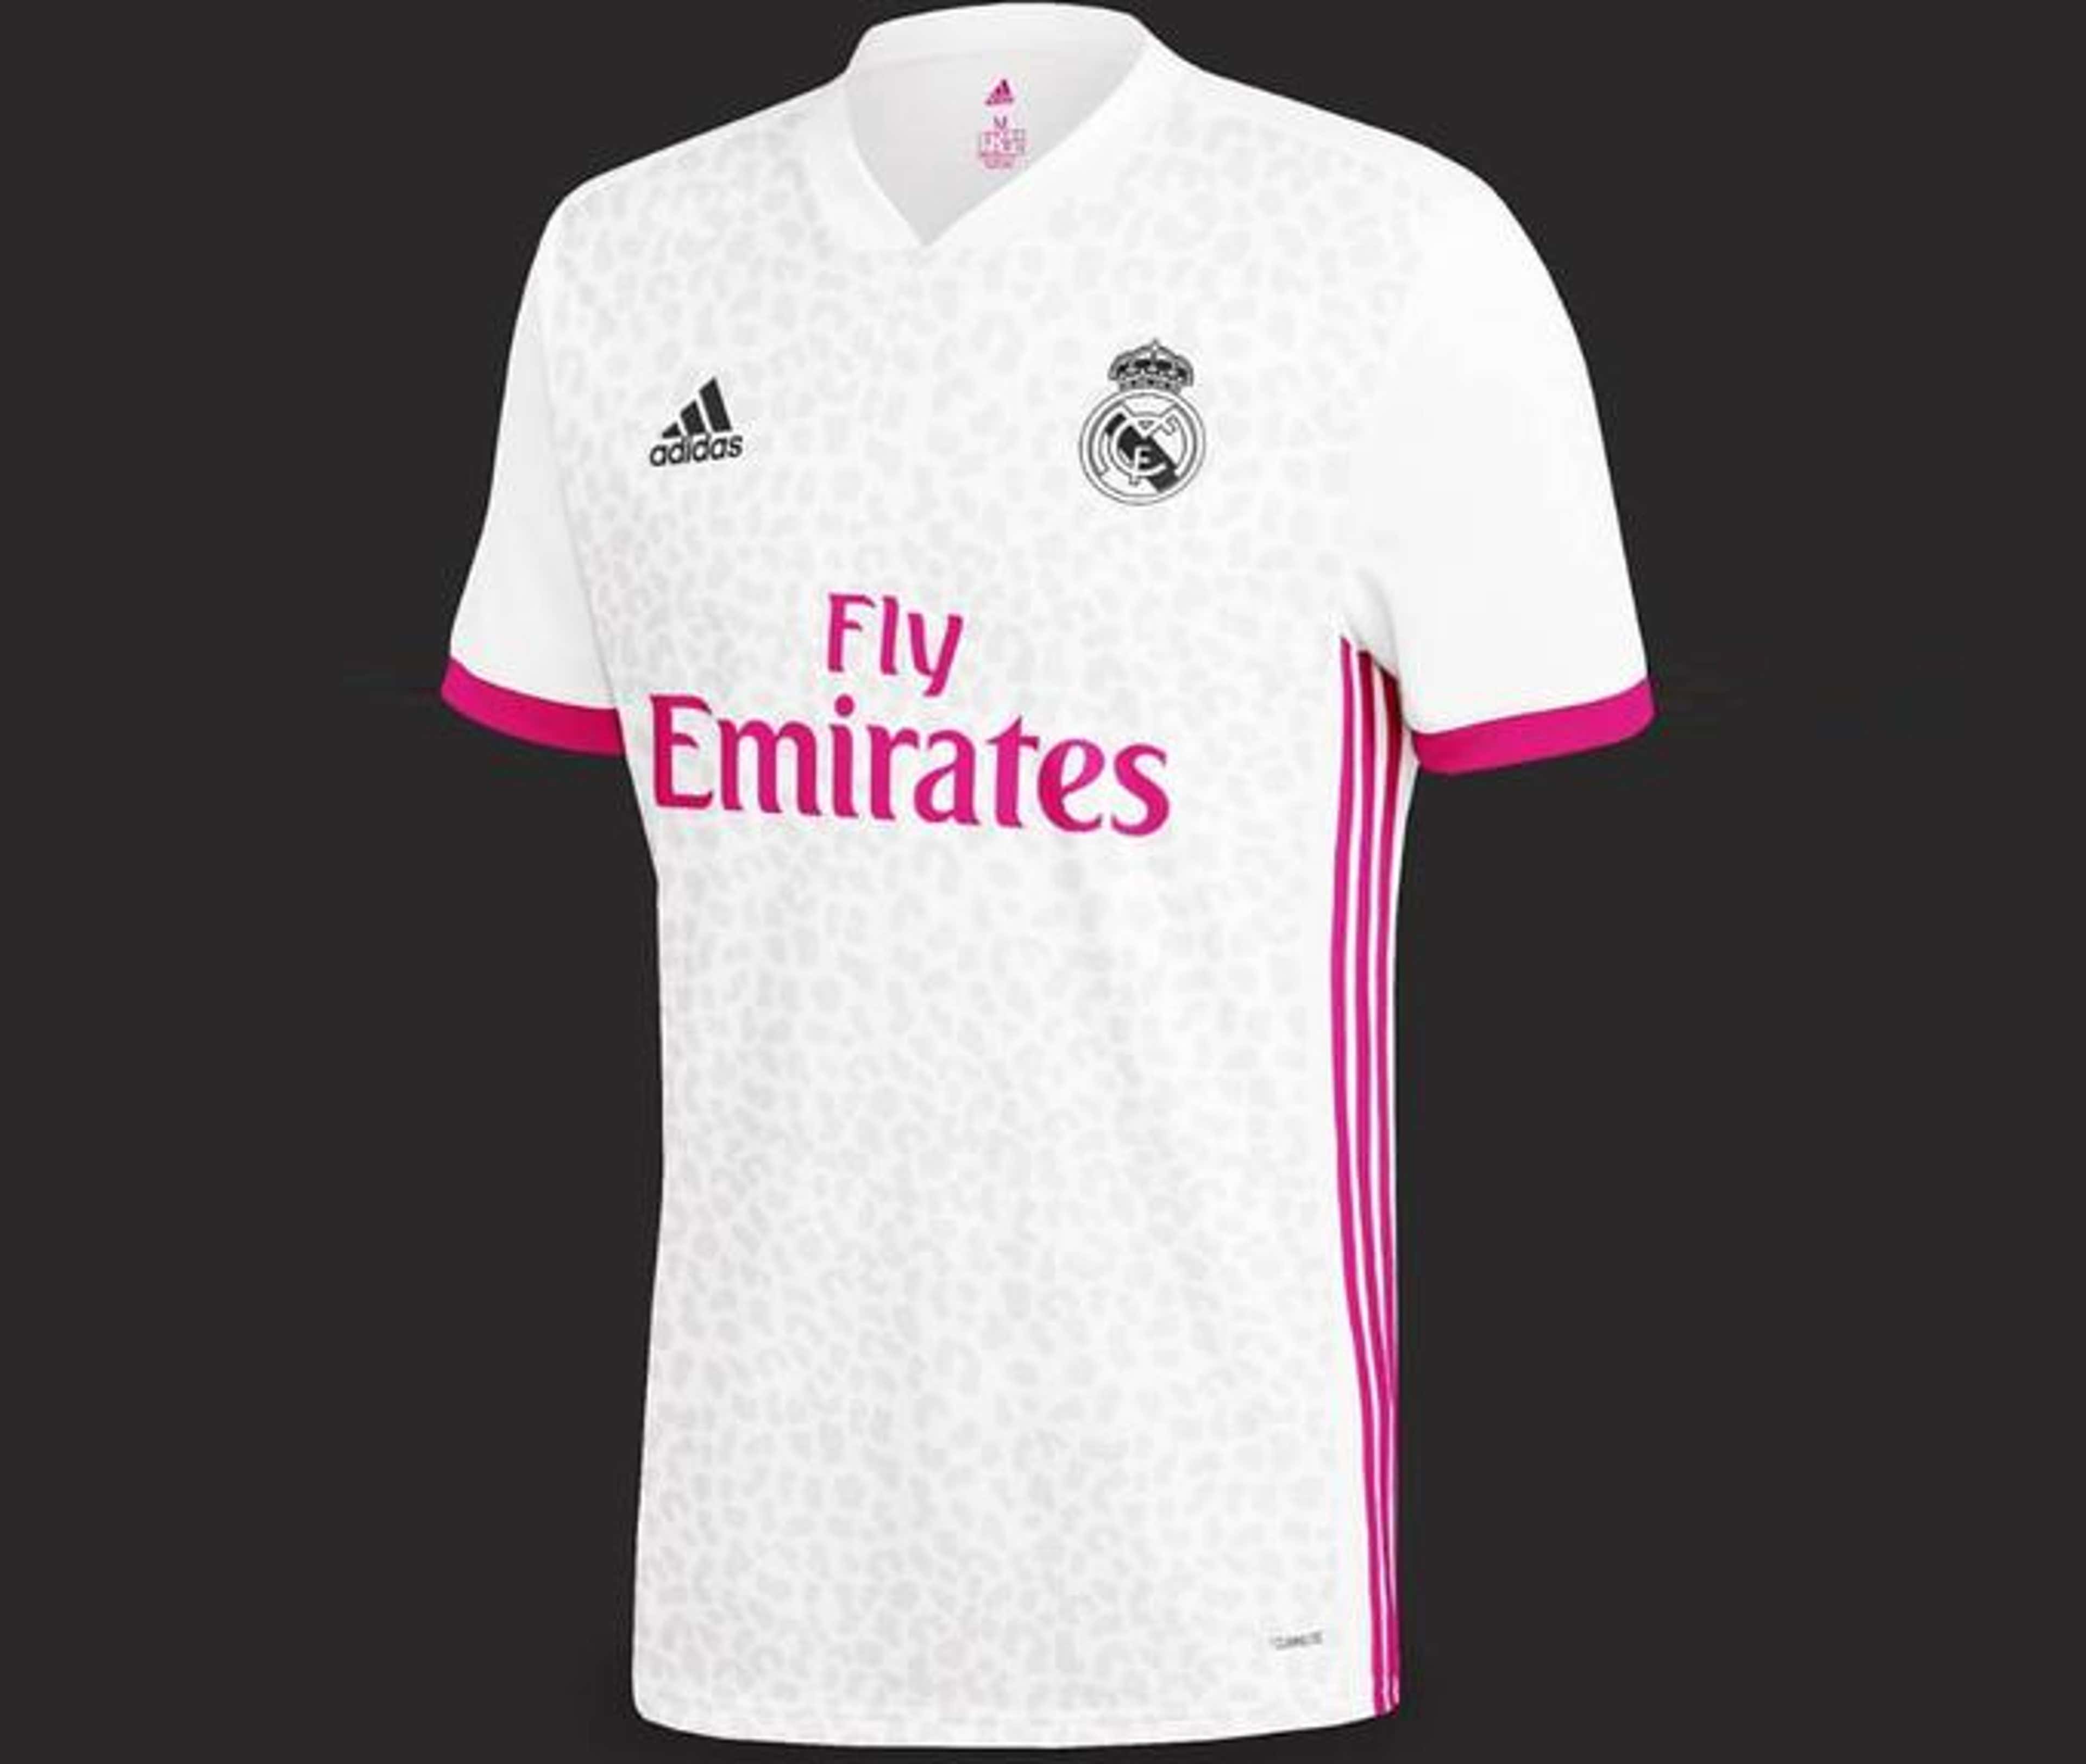 Qué camiseta vestirá Cristiano Ronaldo esta temporada? - El Madrid